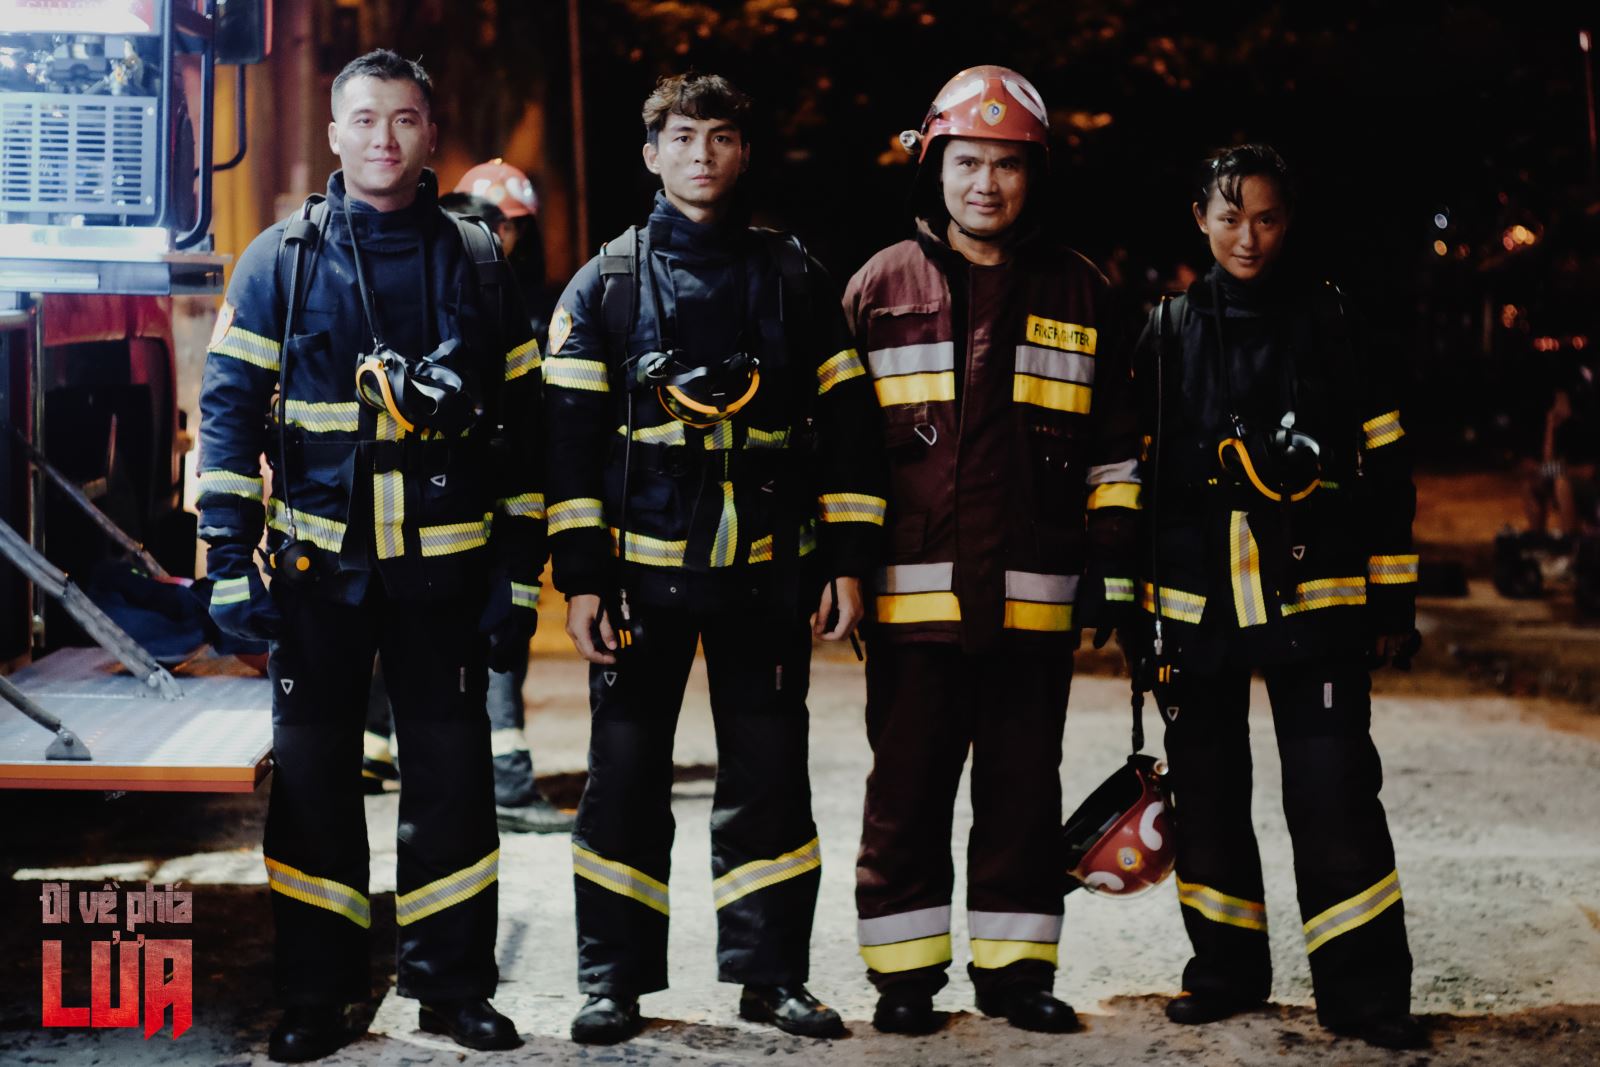 Những câu chuyện cảm động về lính cứu hỏa lên sóng màn ảnh Việt